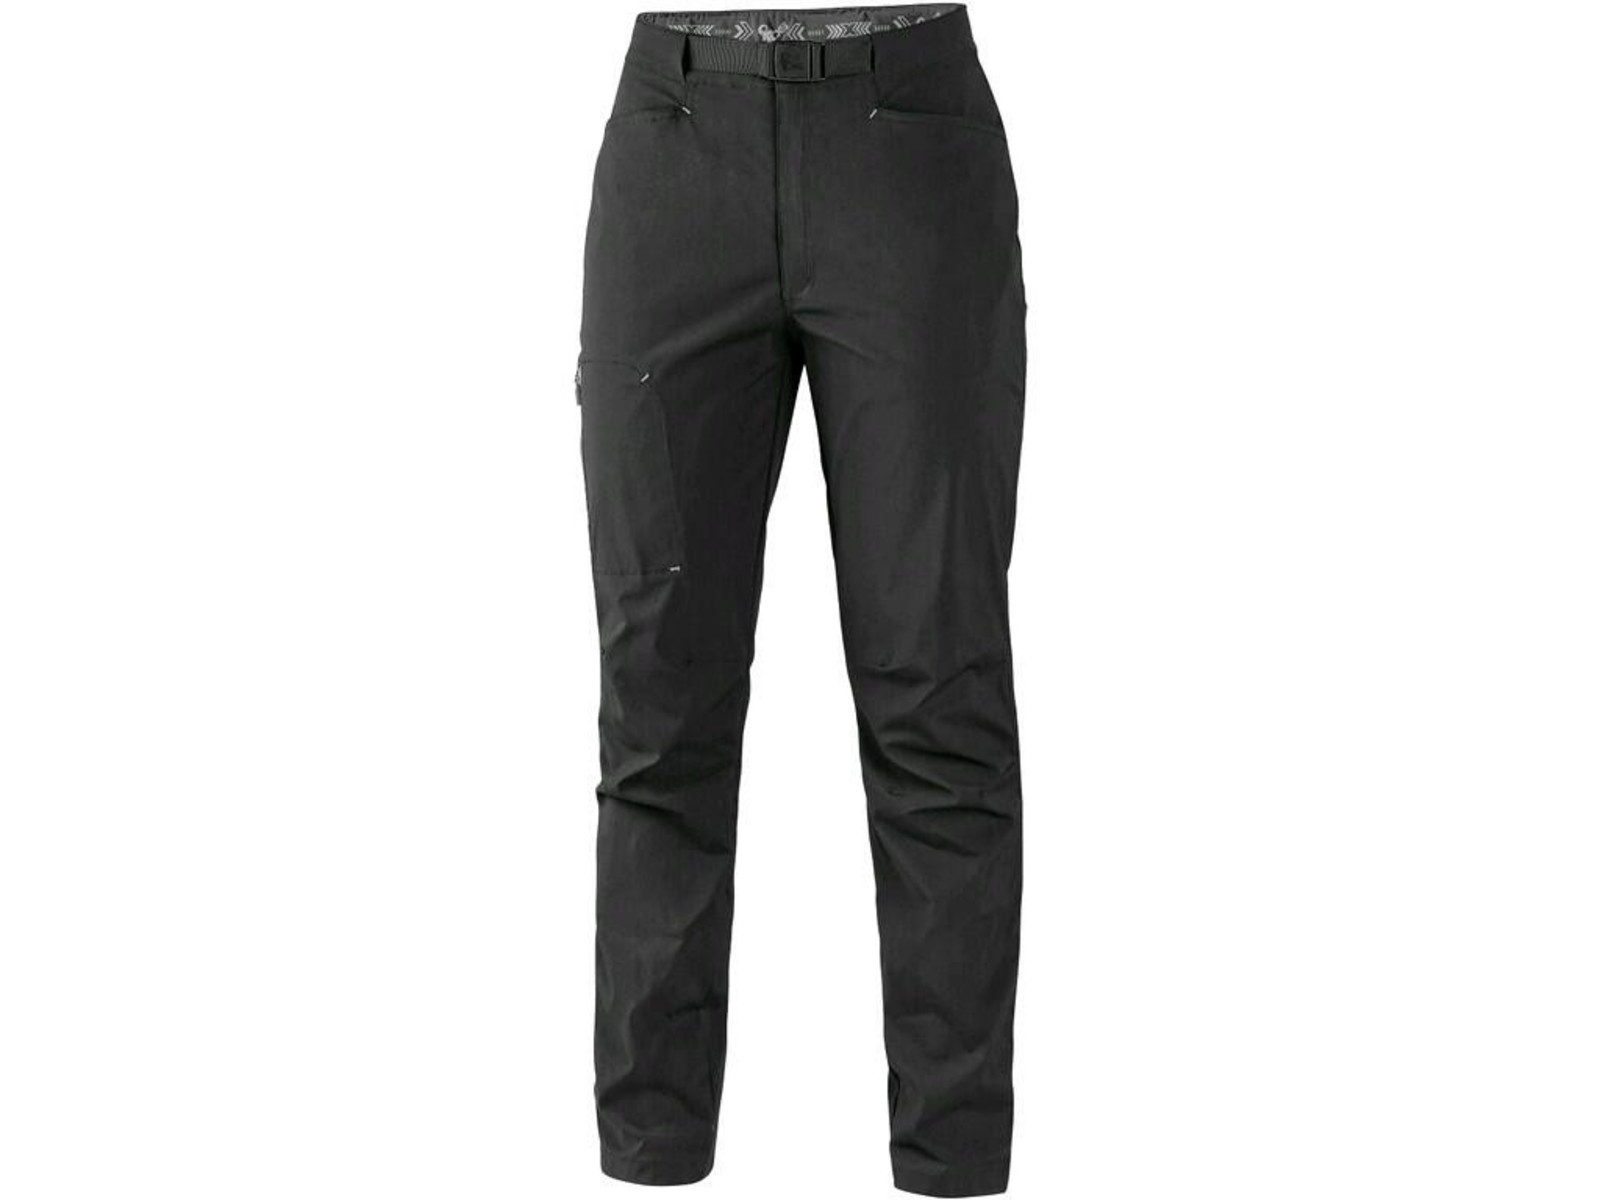 Dámske letné nohavice CXS Oregon - veľkosť: 42, farba: čierna/sivá